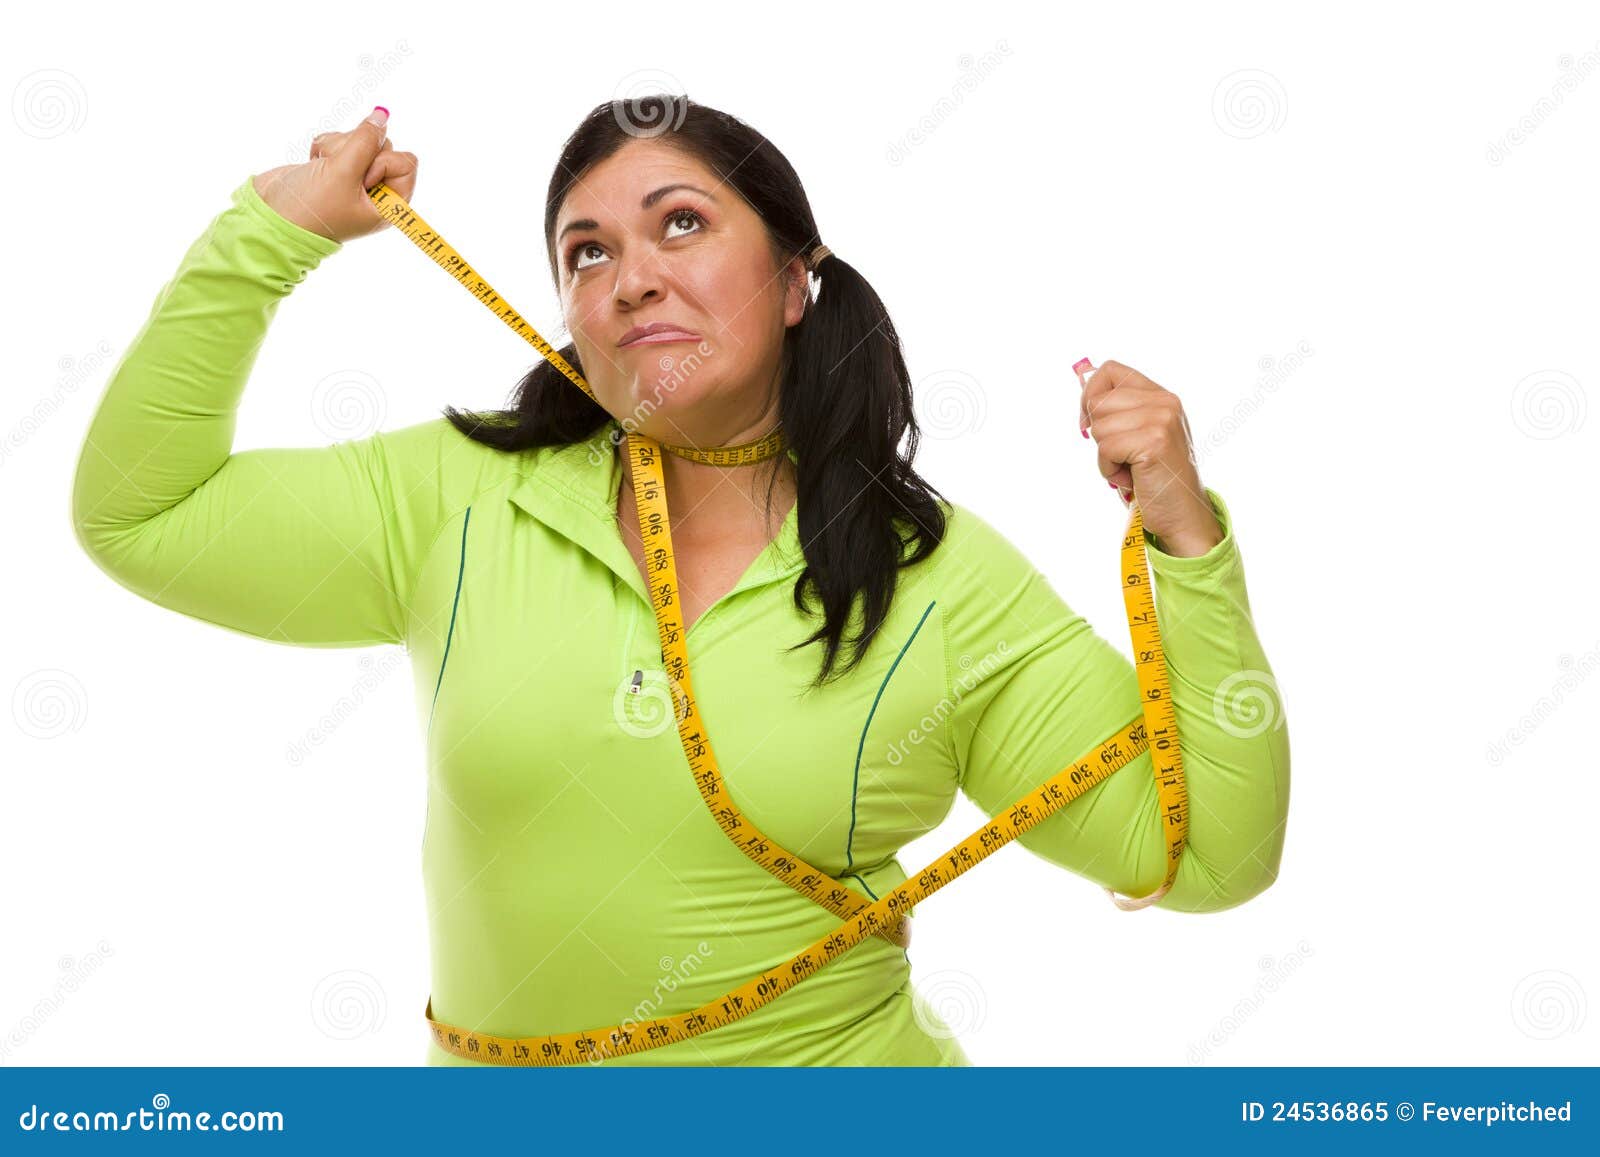 fat women tied up